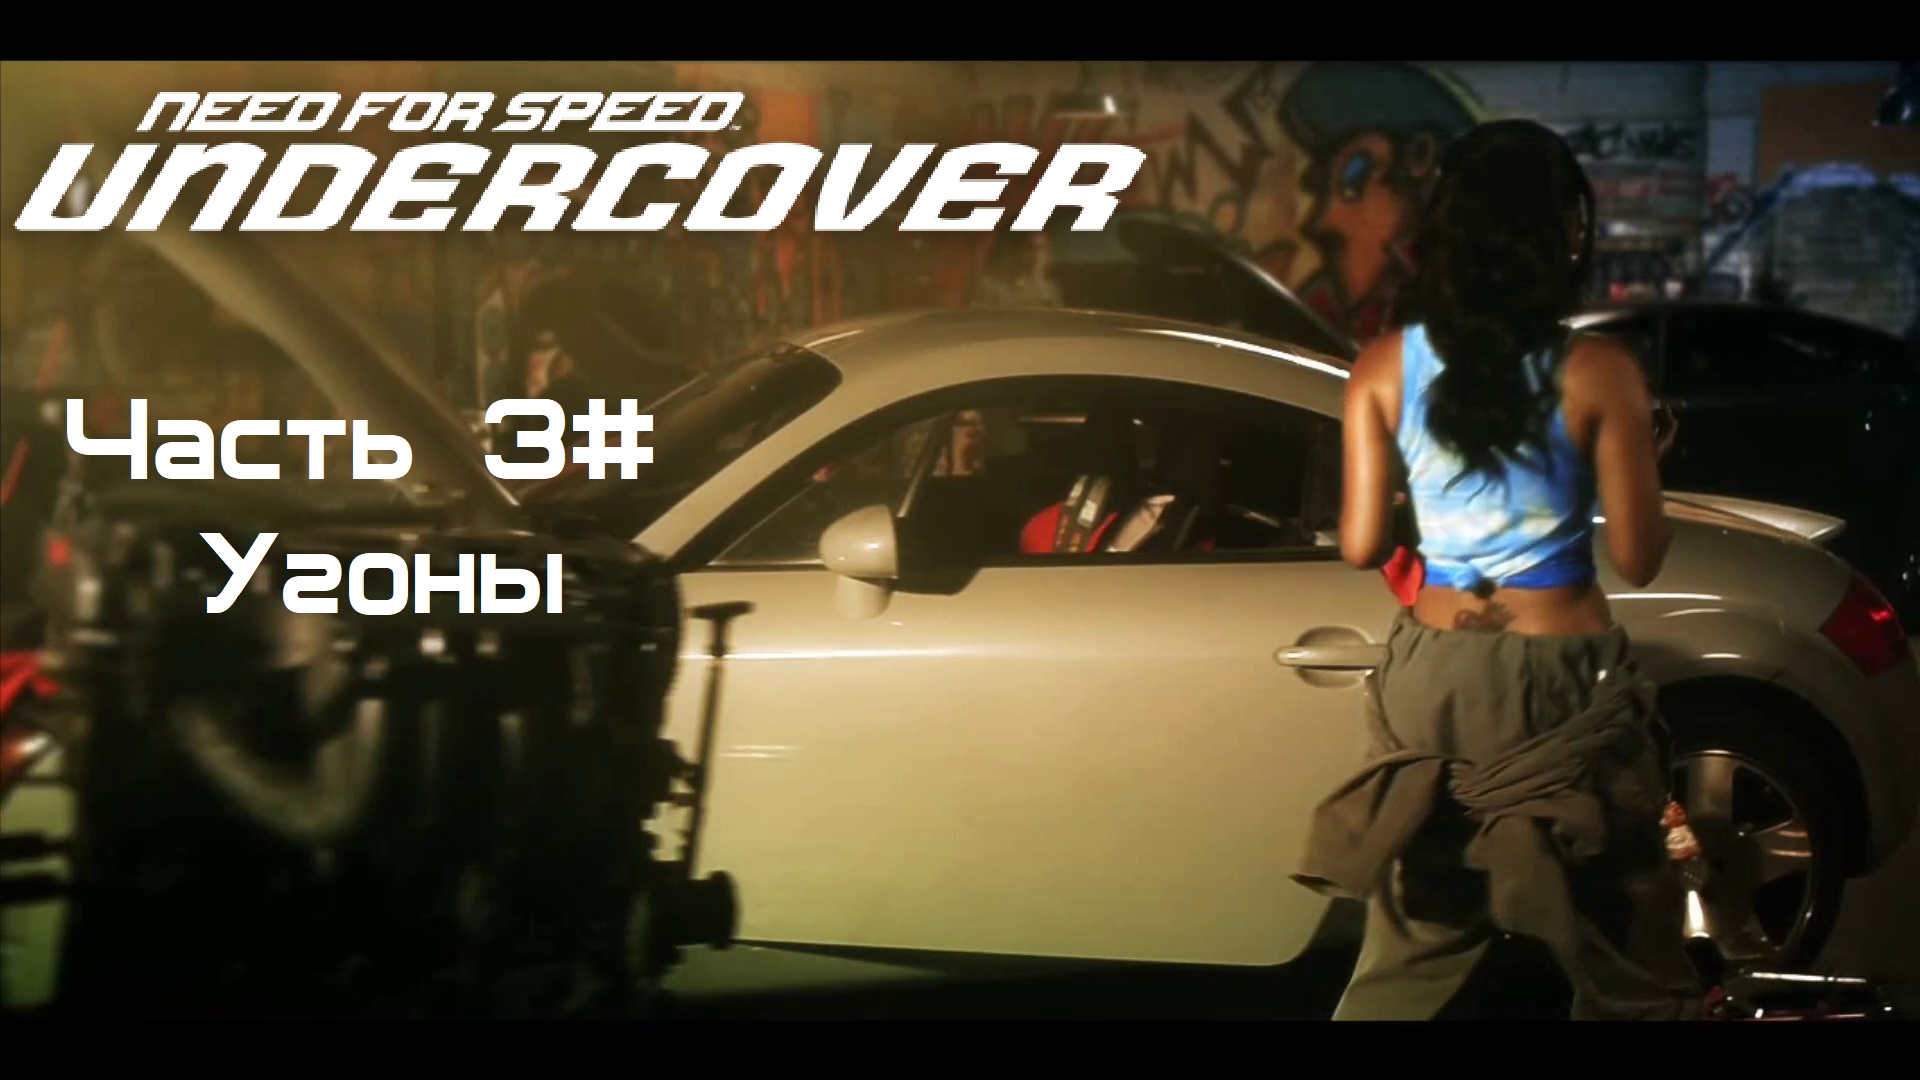 Прохождение Need for Speed: Undercover Часть 3# Угоны (1080p 60fps)